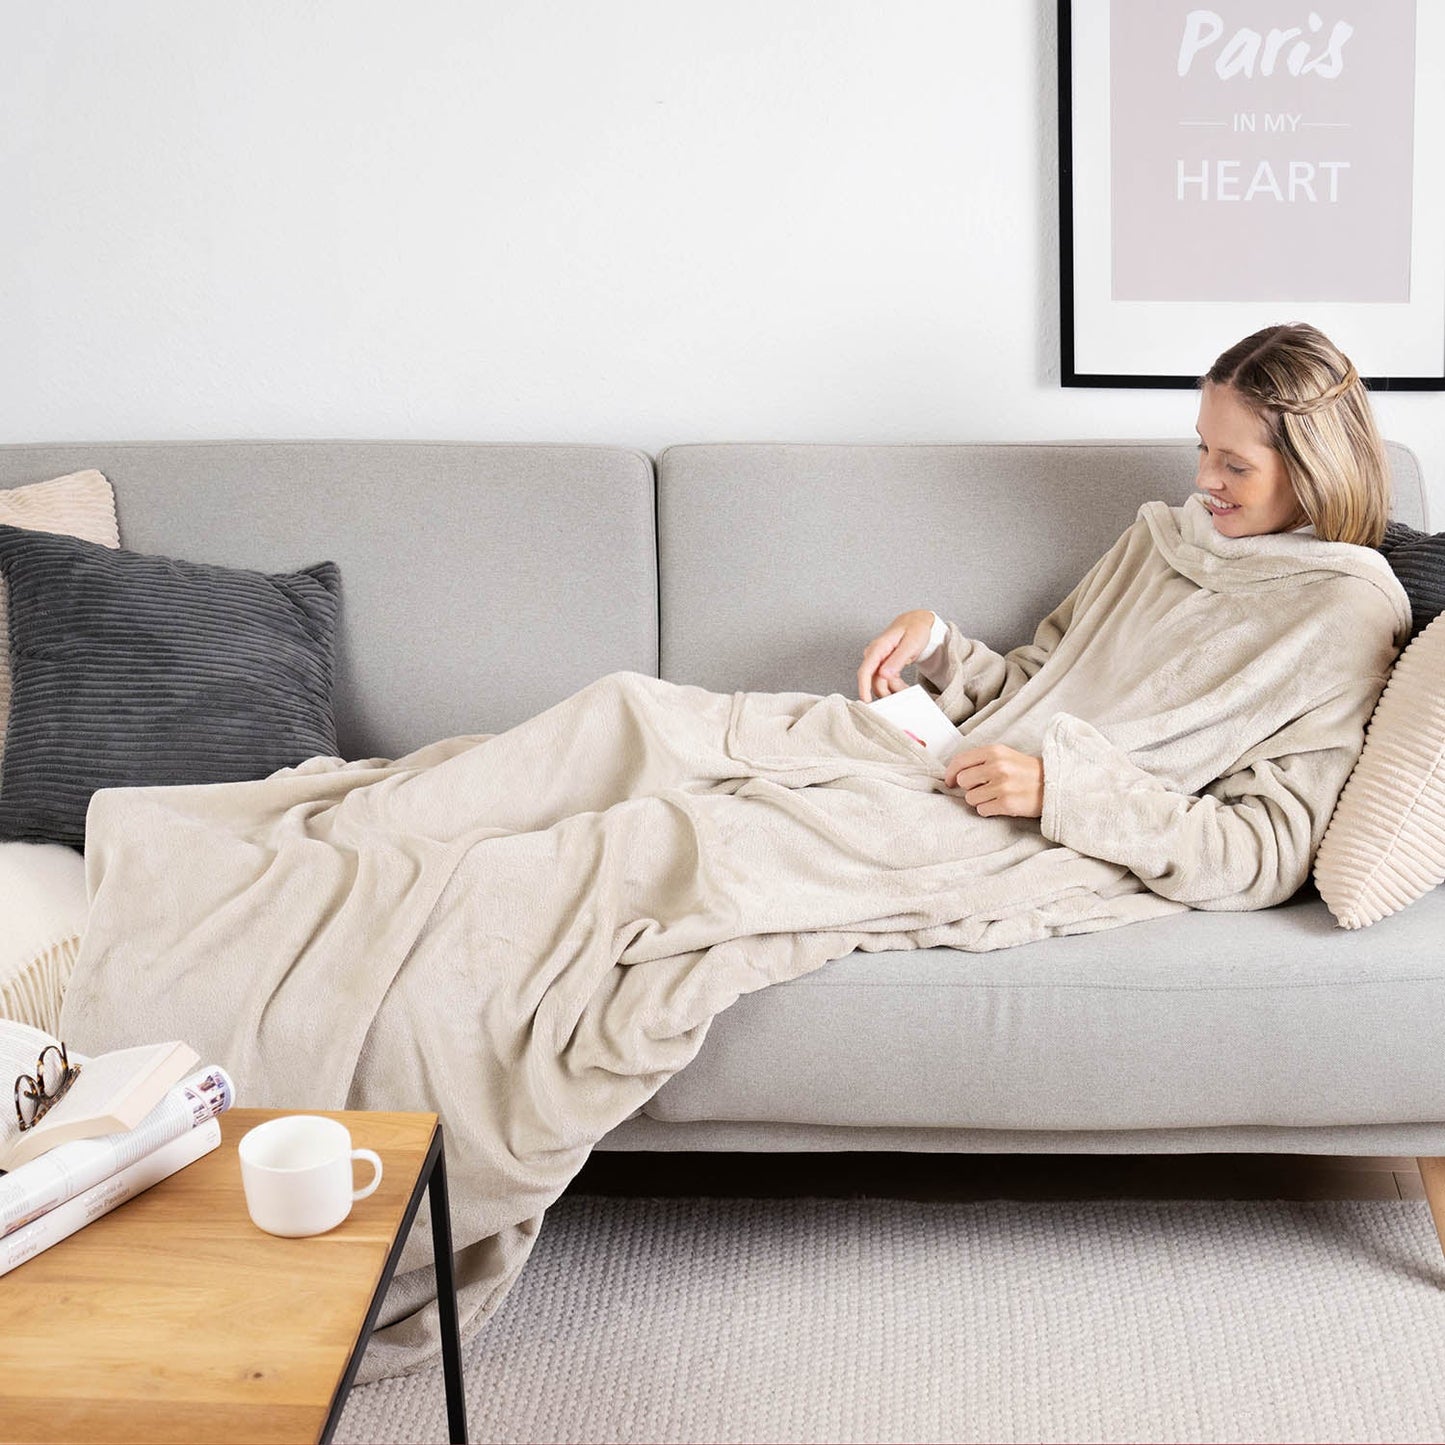 Frau liegt auf einem grauen Sofa eingehüllt in ein beige flauschiges Kleidungsstück und liest ein Buch mit einer Tasse auf einem Holztisch daneben.